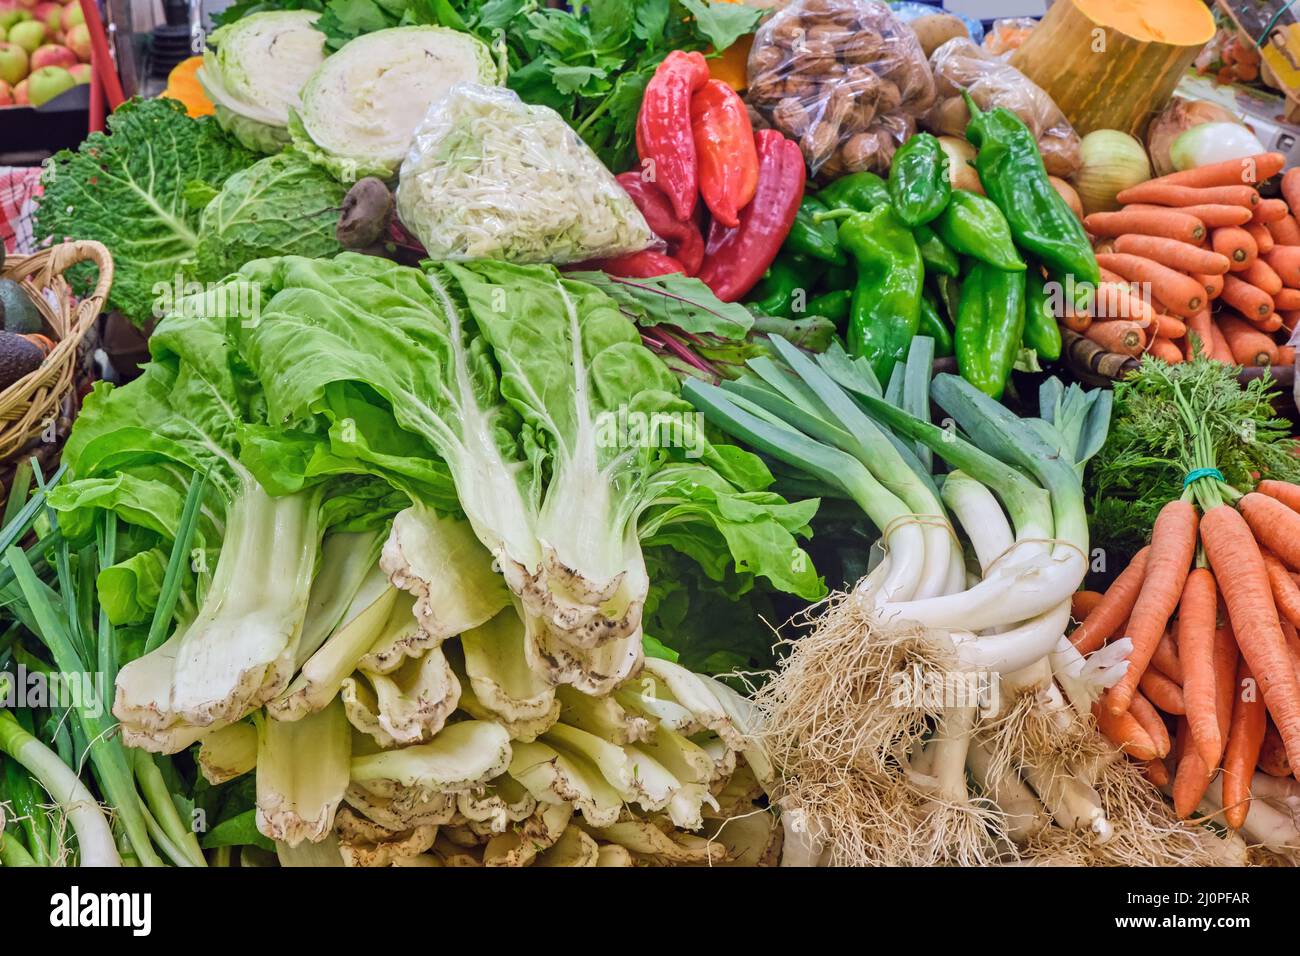 Gran variedad de verduras frescas y ensalada vista en un puesto de mercado Foto de stock